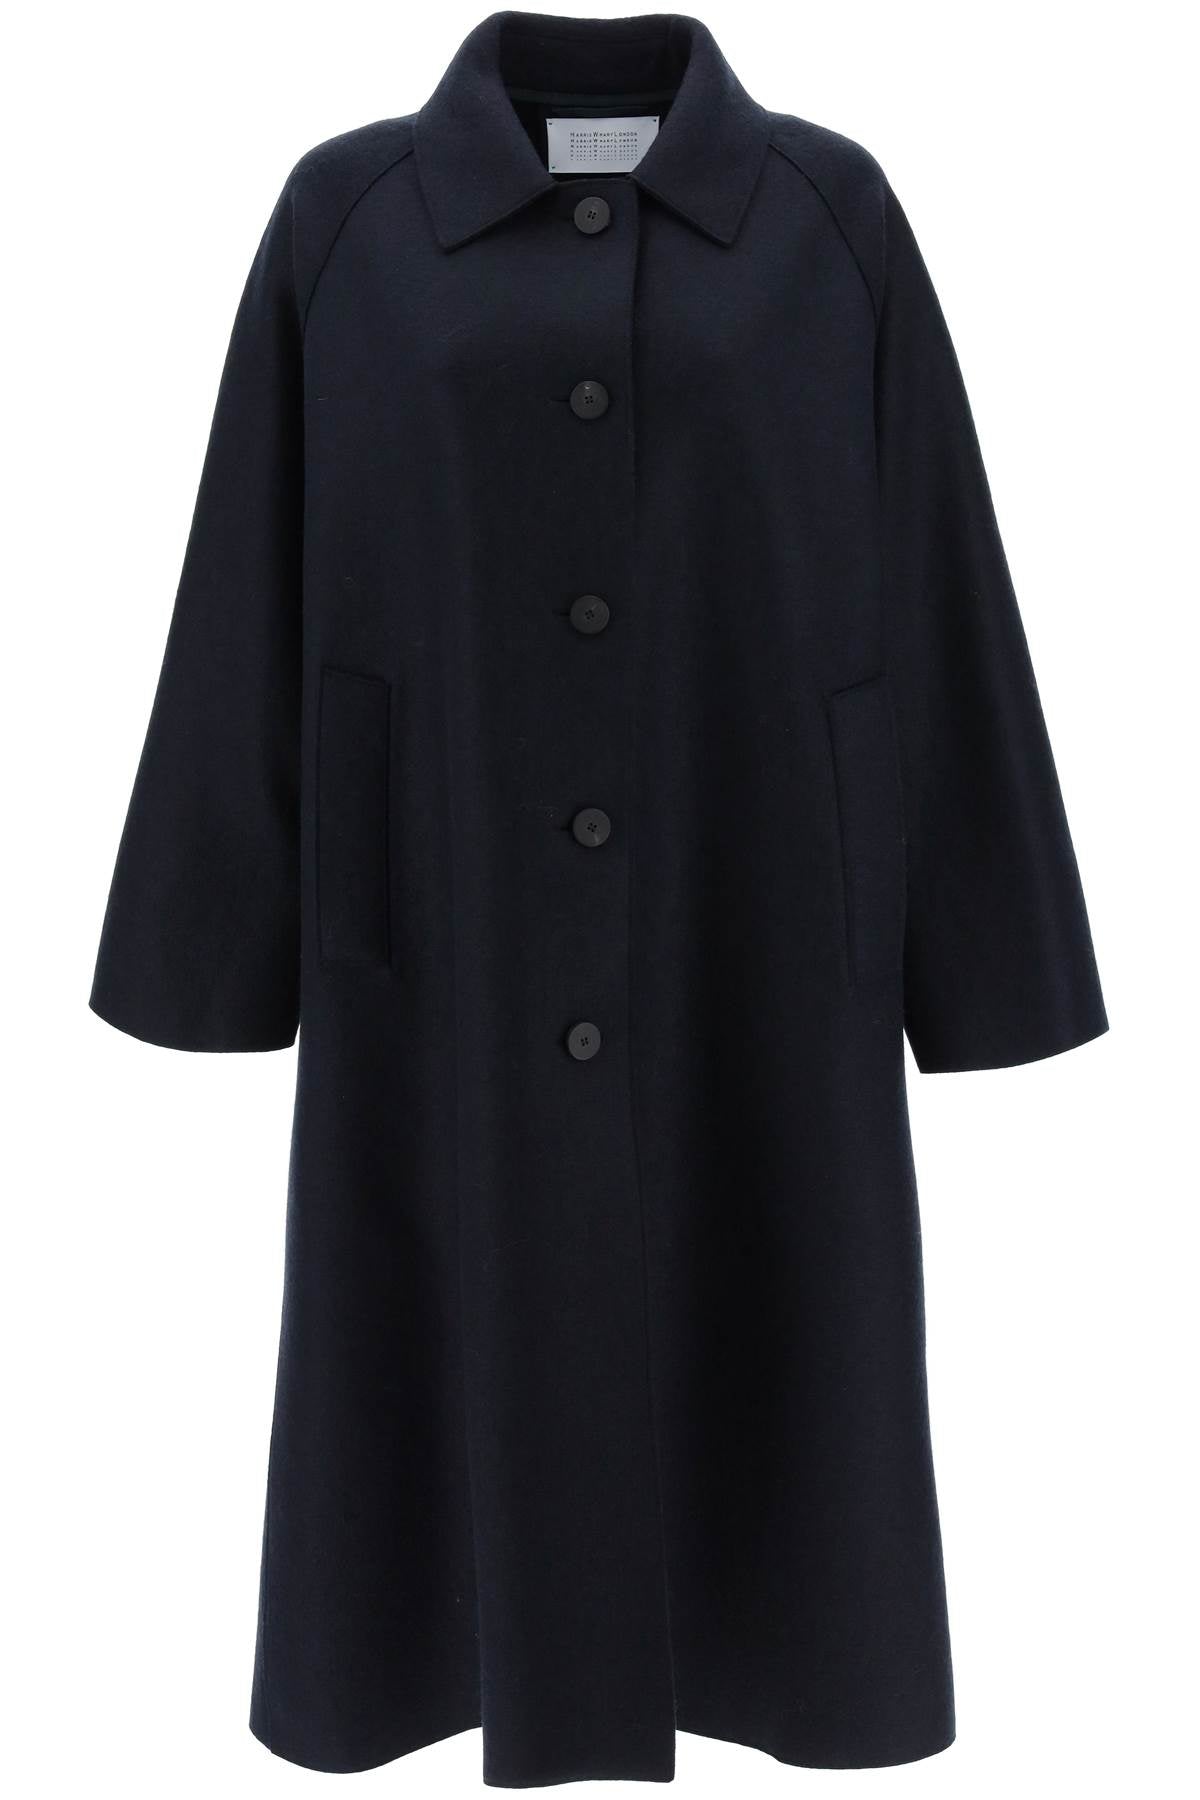 Harris wharf london balmacaan coat in pressed wool-0